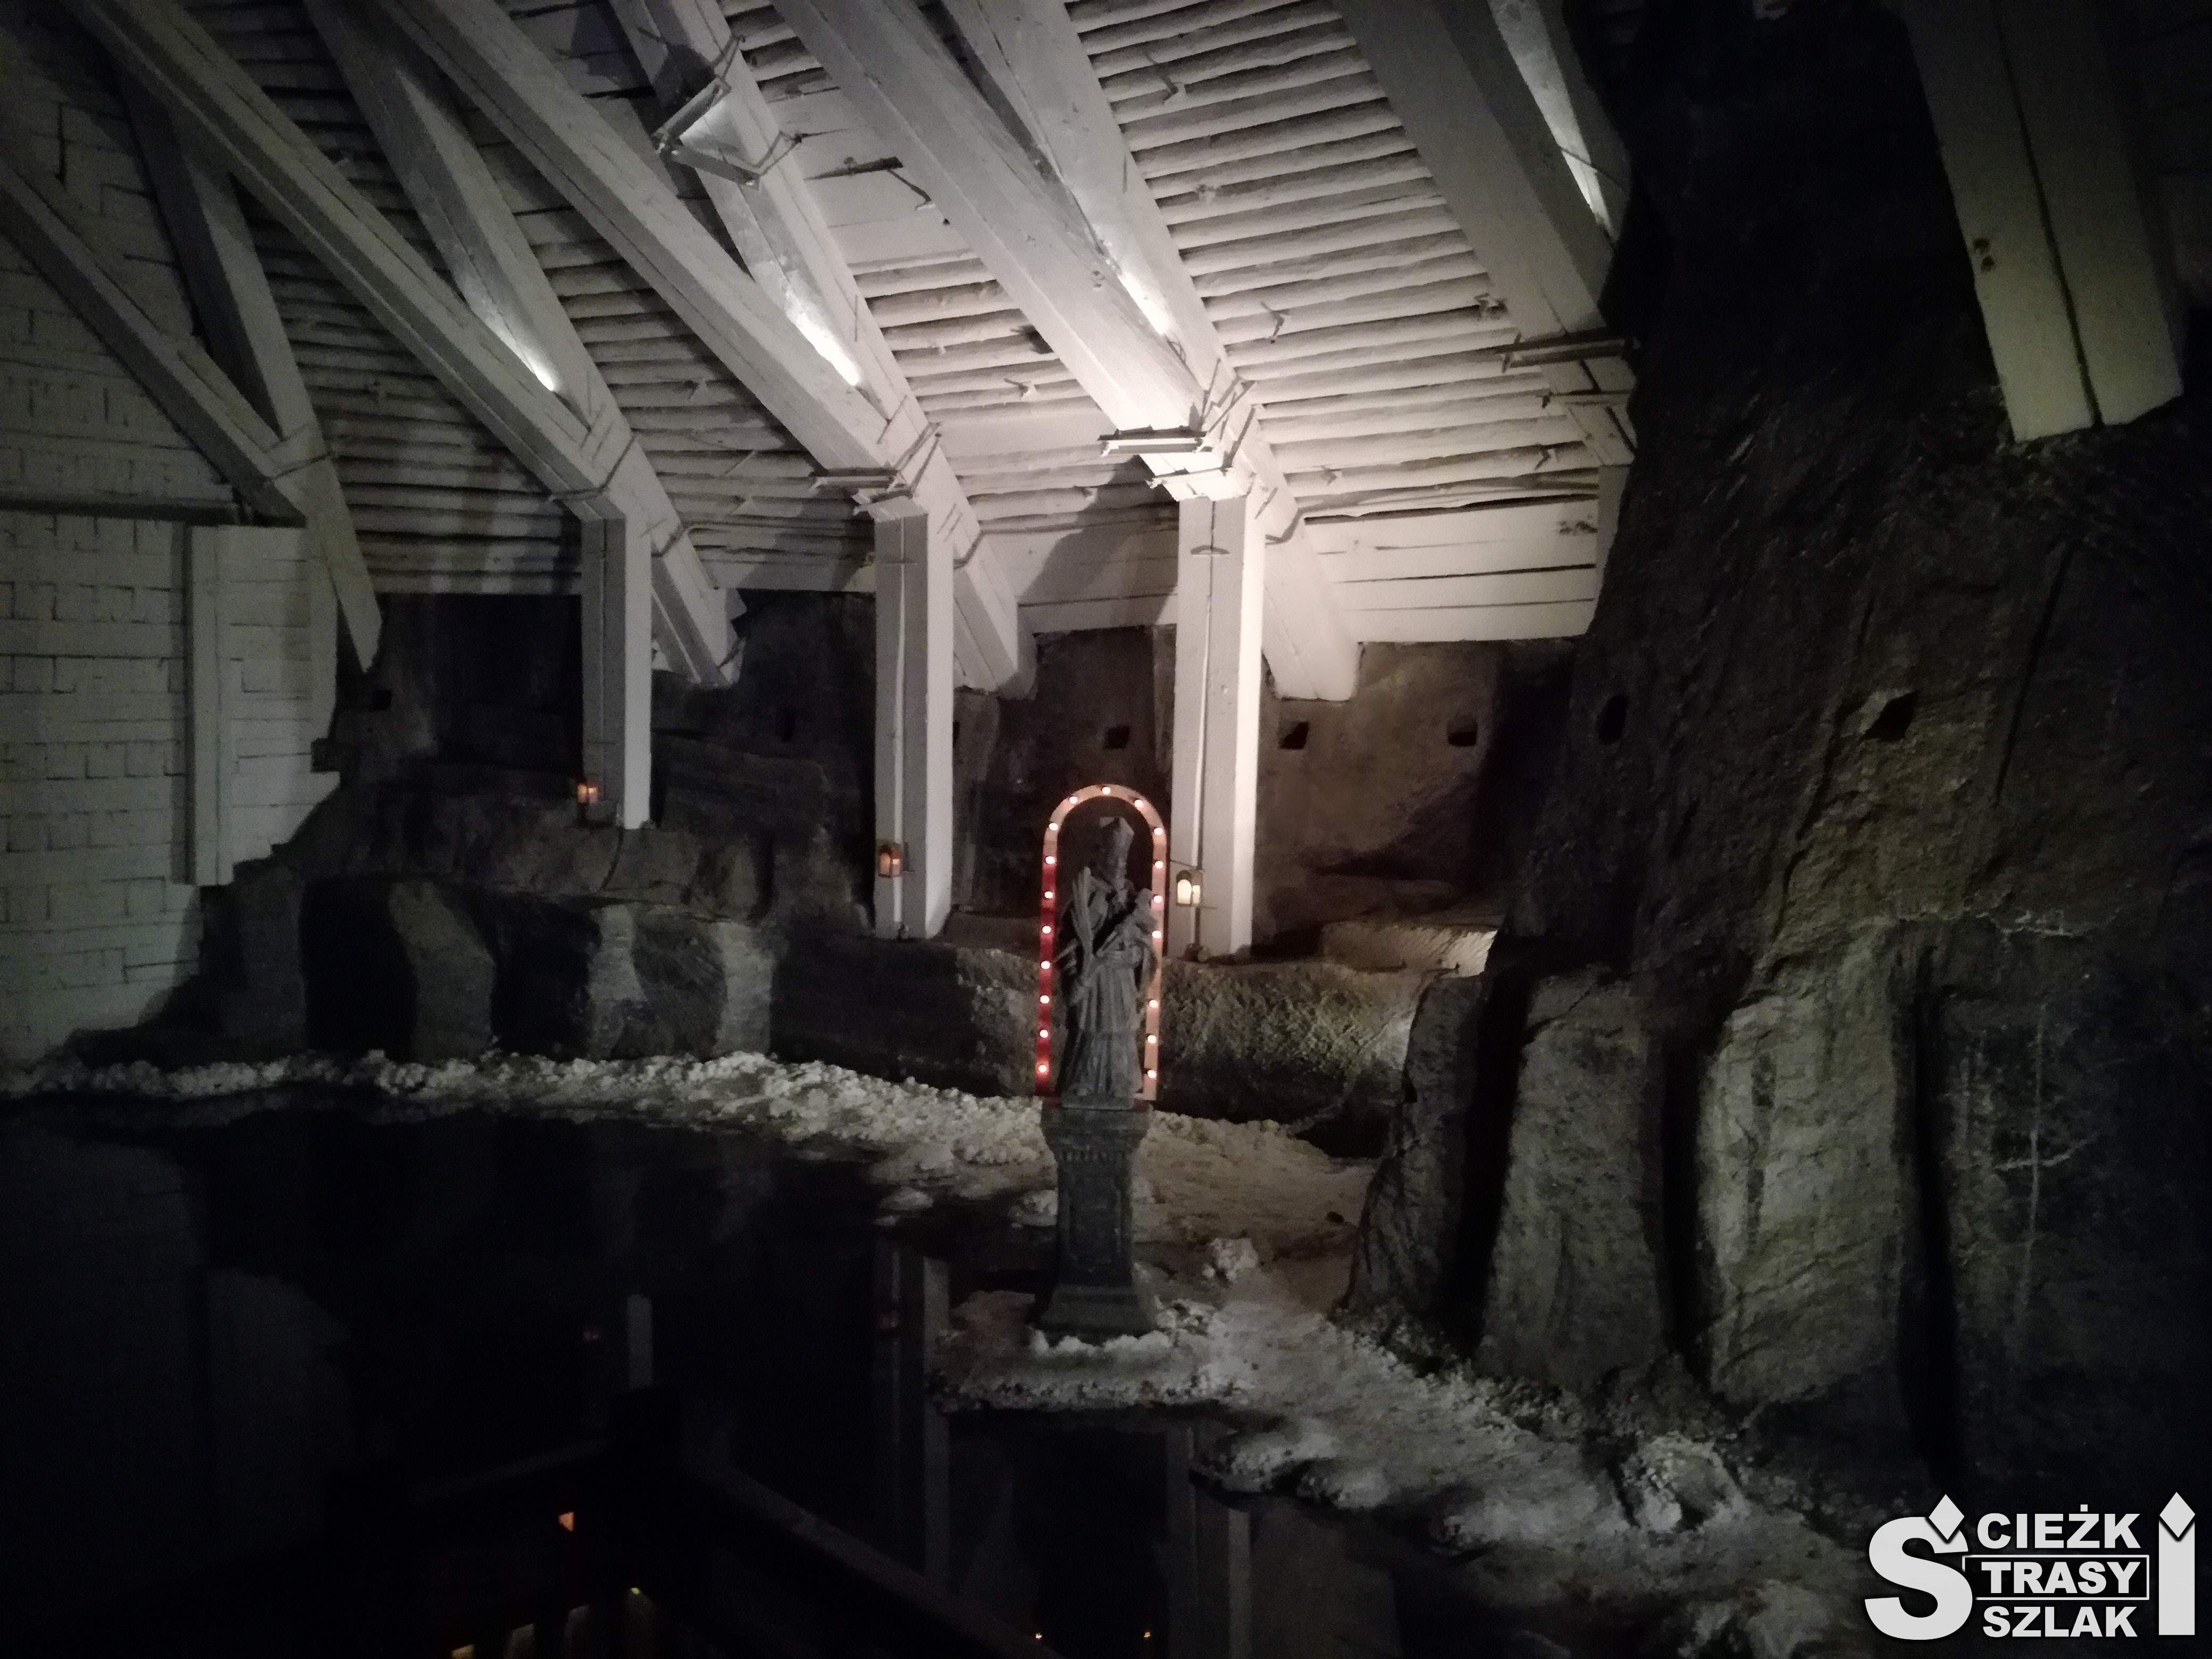 Podziemne jezioro solankowe w kopalni soli w Wieliczce w komorze Erazma z białym z drewna sklepieniem